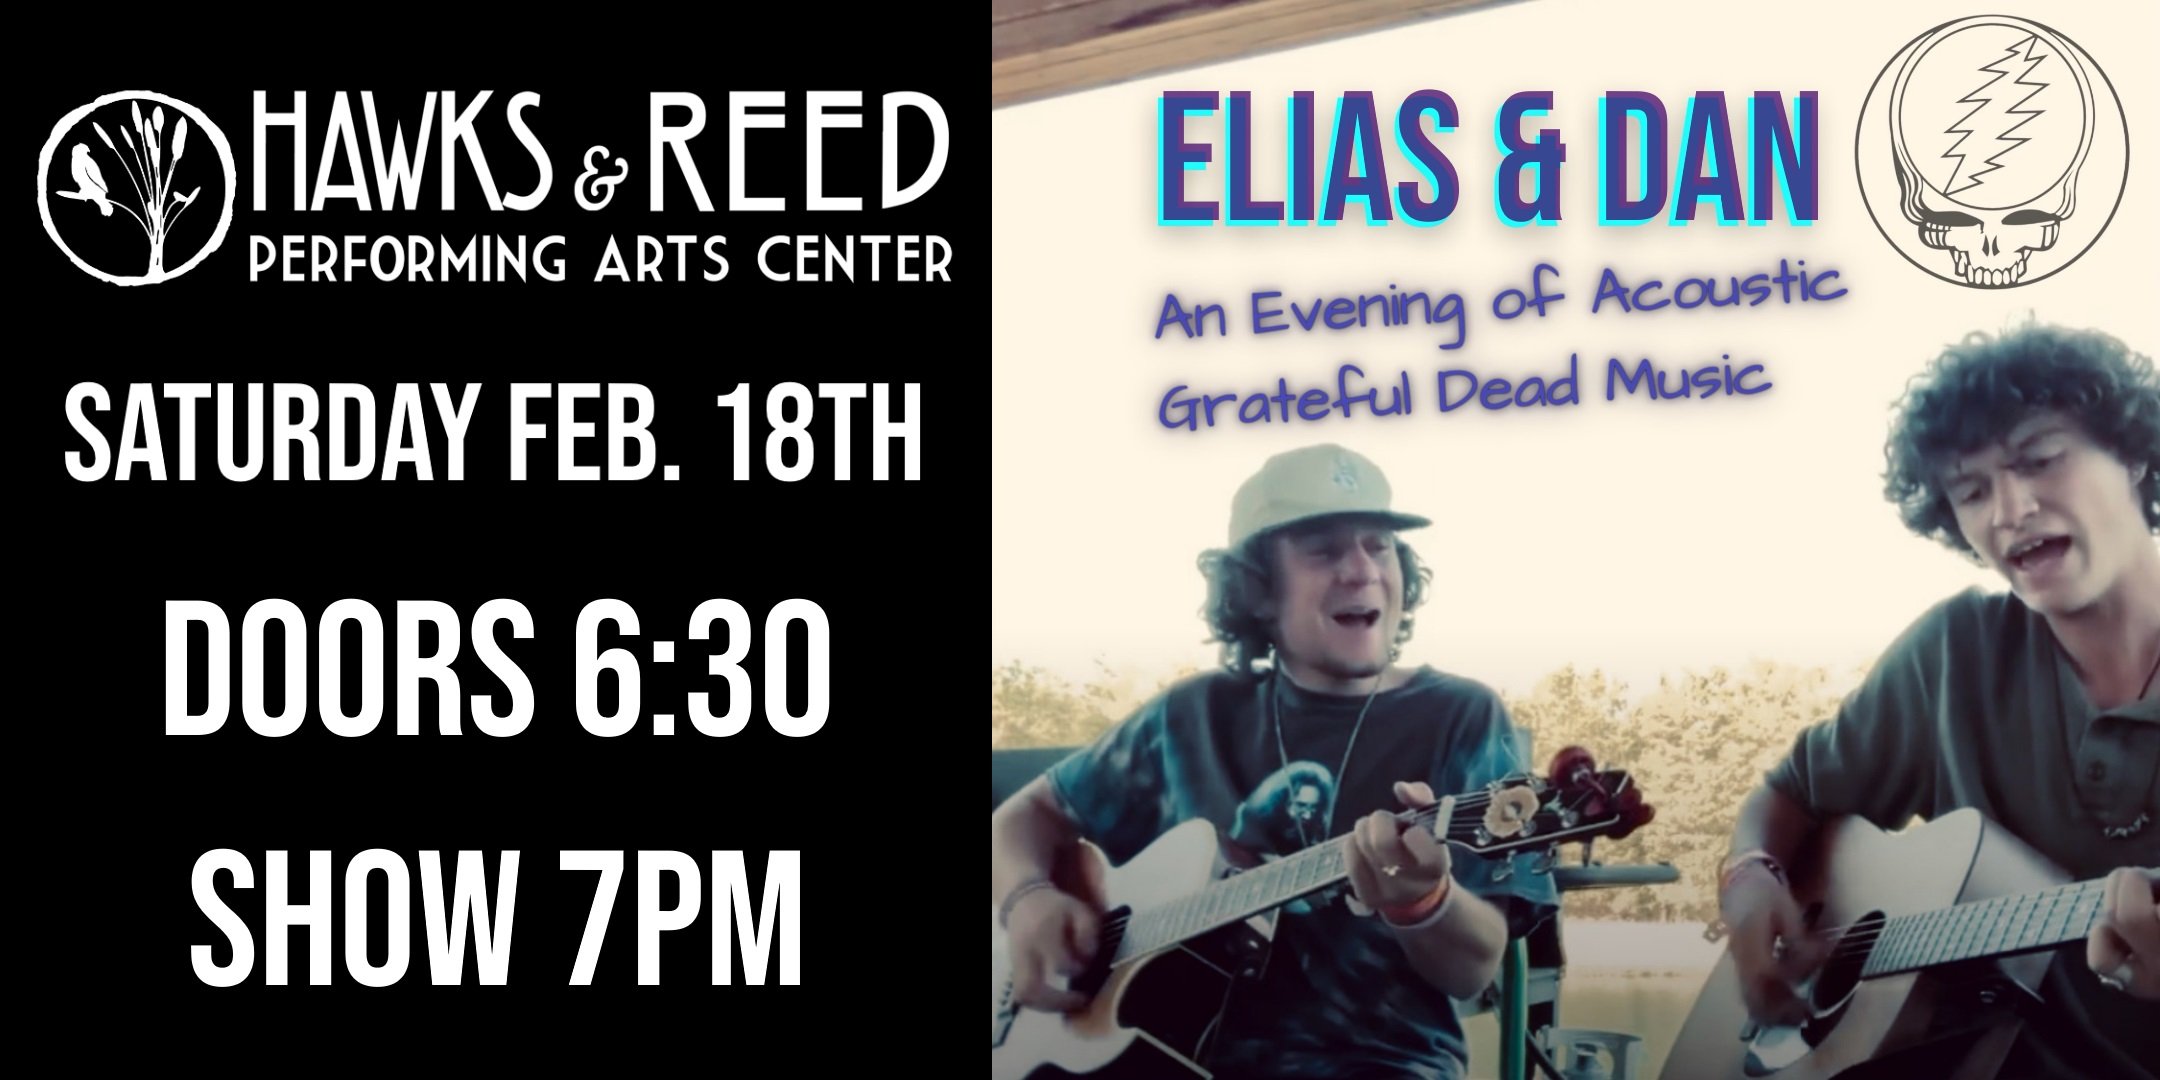 Elias & Dan: An Evening of Grateful Dead Music